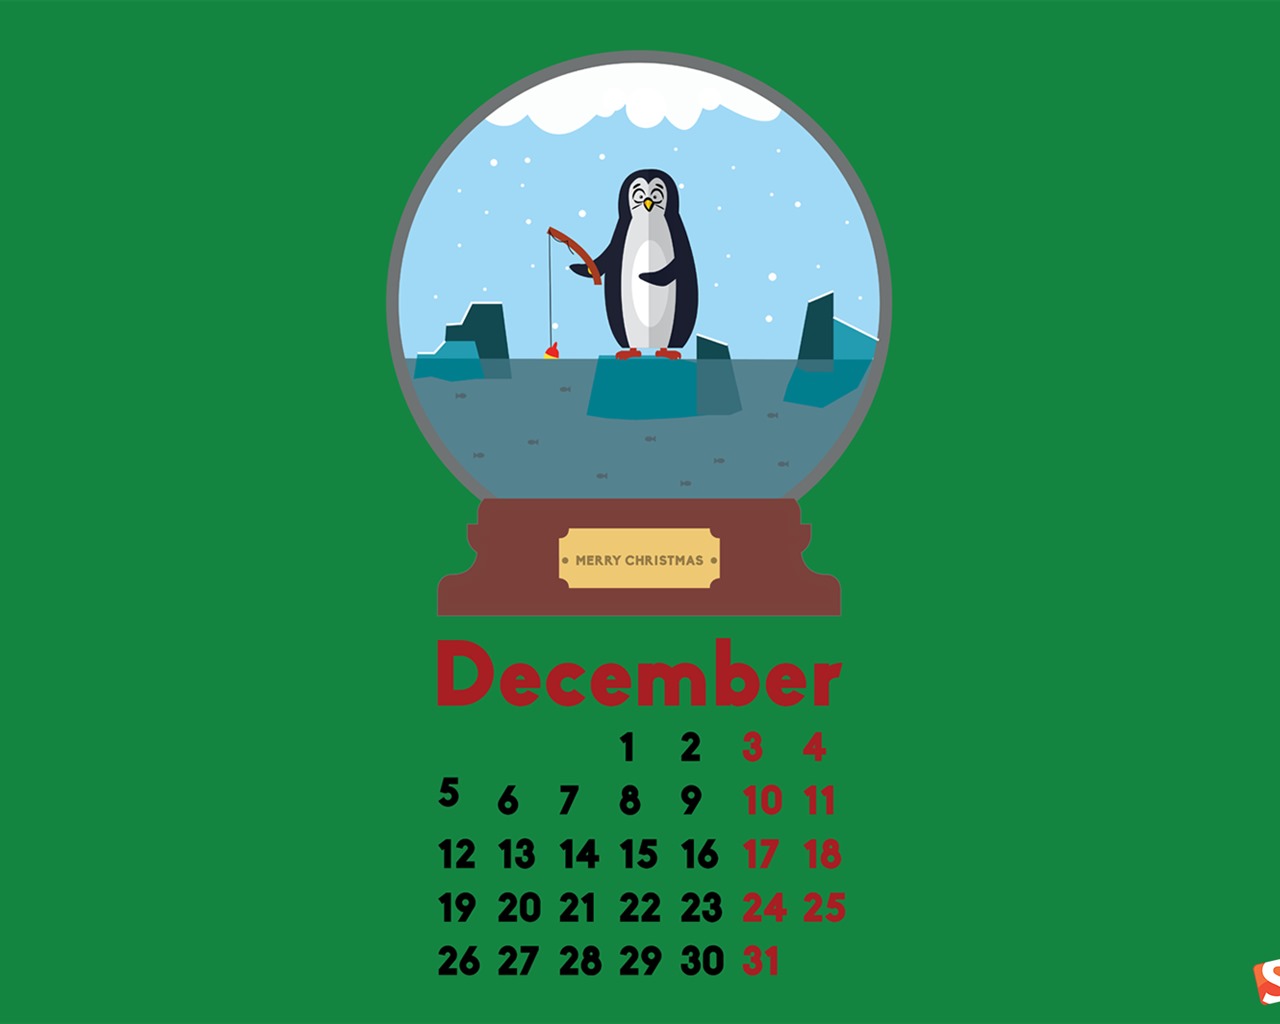 December 2016 Christmas theme calendar wallpaper (2) #8 - 1280x1024